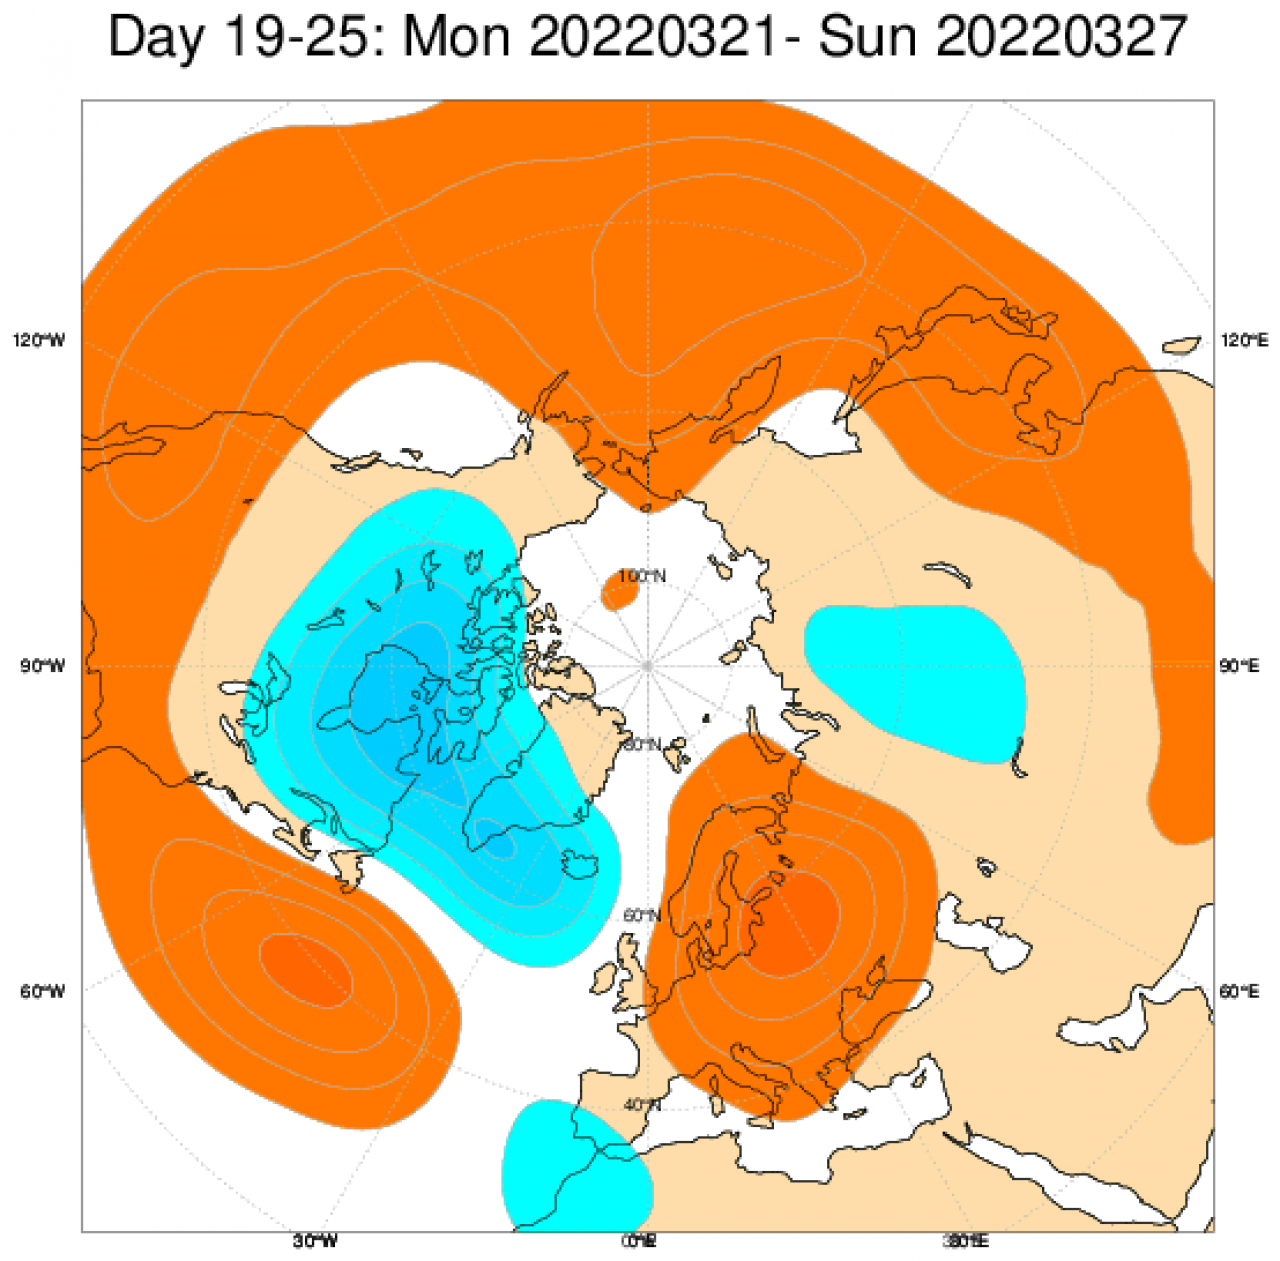 Le anomalie di geopotenziale in Europa secondo il modello ECMWF, mediate nel periodo 21-27 marzo